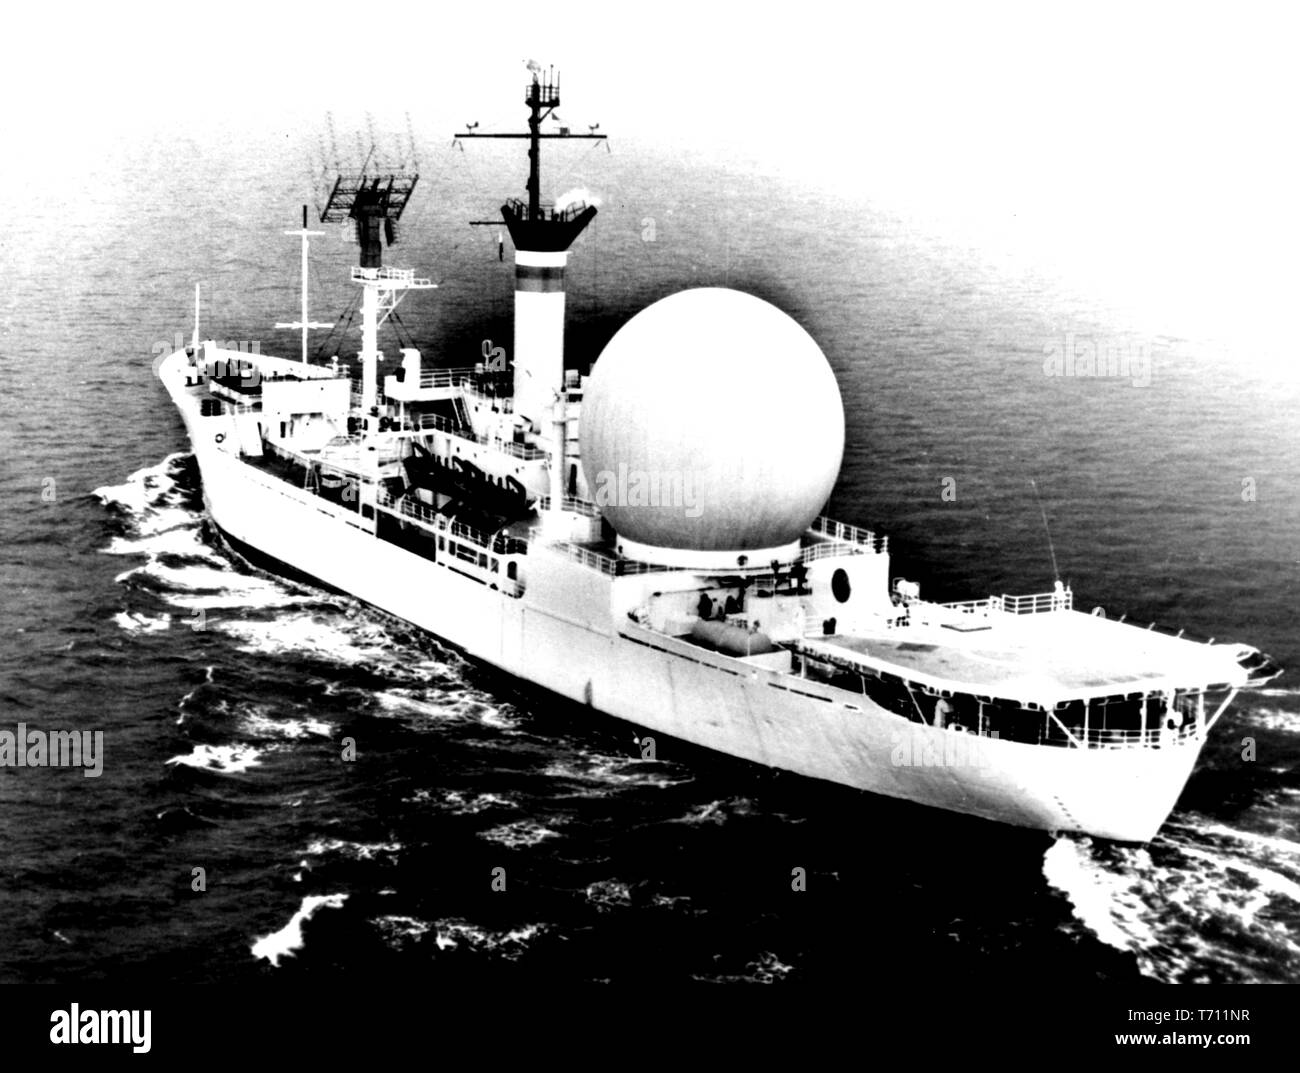 Foto von der United States Navy Kingsport, den ersten Satelliten Kommunikation Schiff, 29. Januar 1963. Mit freundlicher Genehmigung der Nationalen Luft- und Raumfahrtbehörde (NASA). () Stockfoto